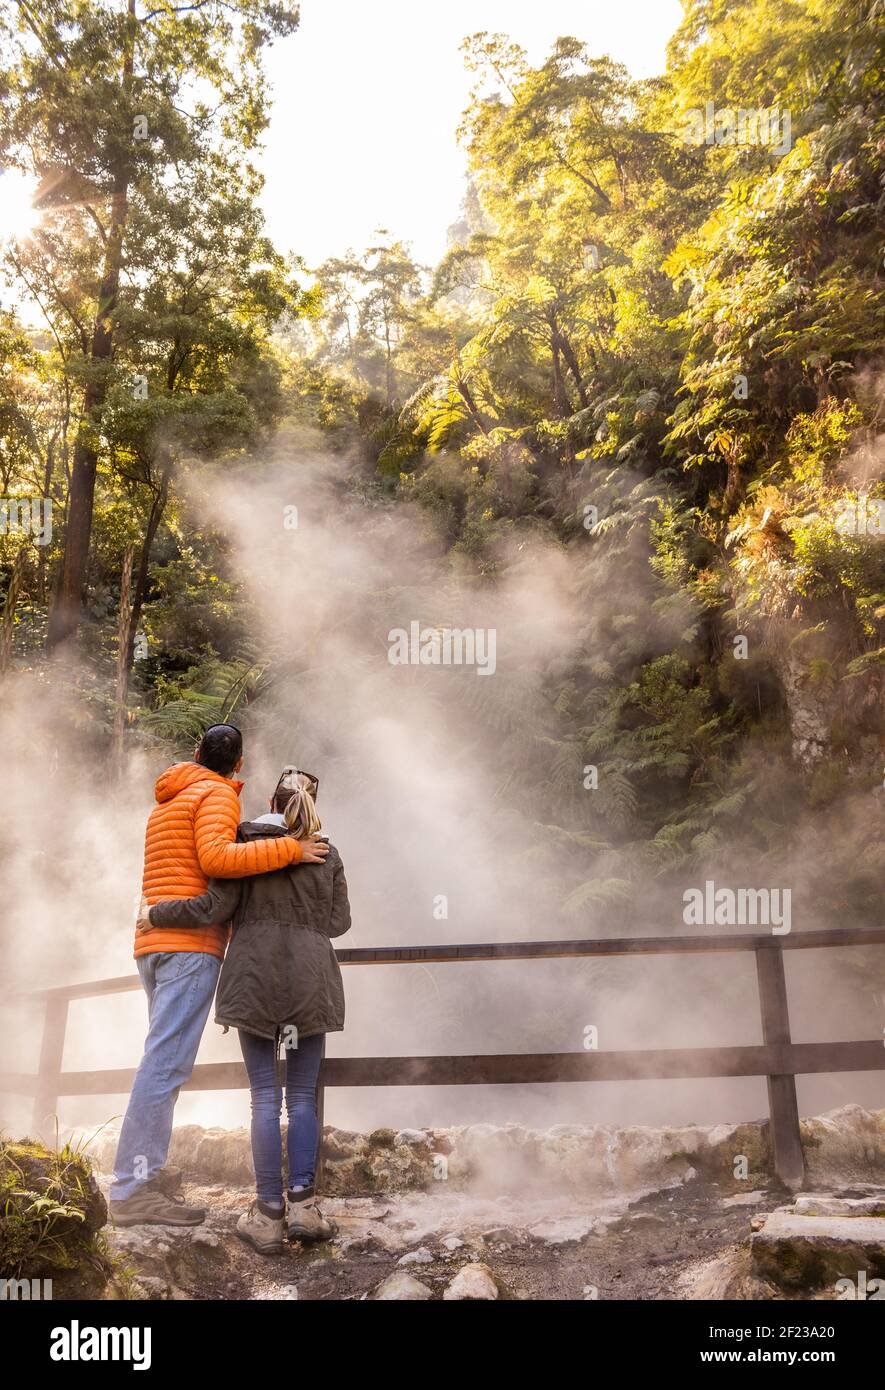 Paar genießen Caldeira Velha, Naturdenkmal auf den Azoren Inseln, Geothermie-Bereich. Stockfoto